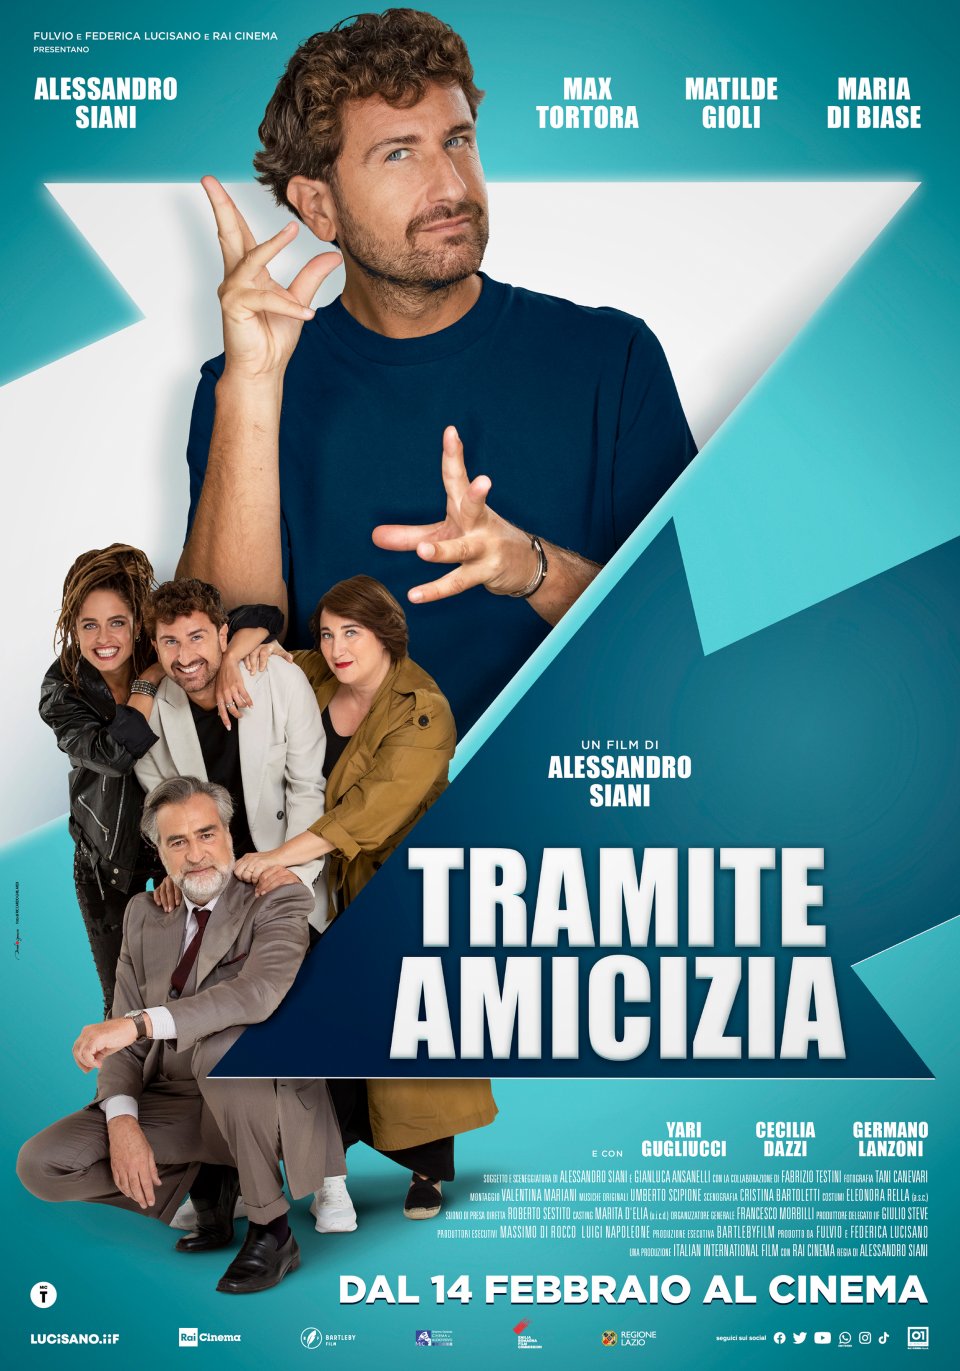 Tramite Amicizia: il poster del nuovo film di Alessandro Siani svela la  data di uscita - Movieplayer.it